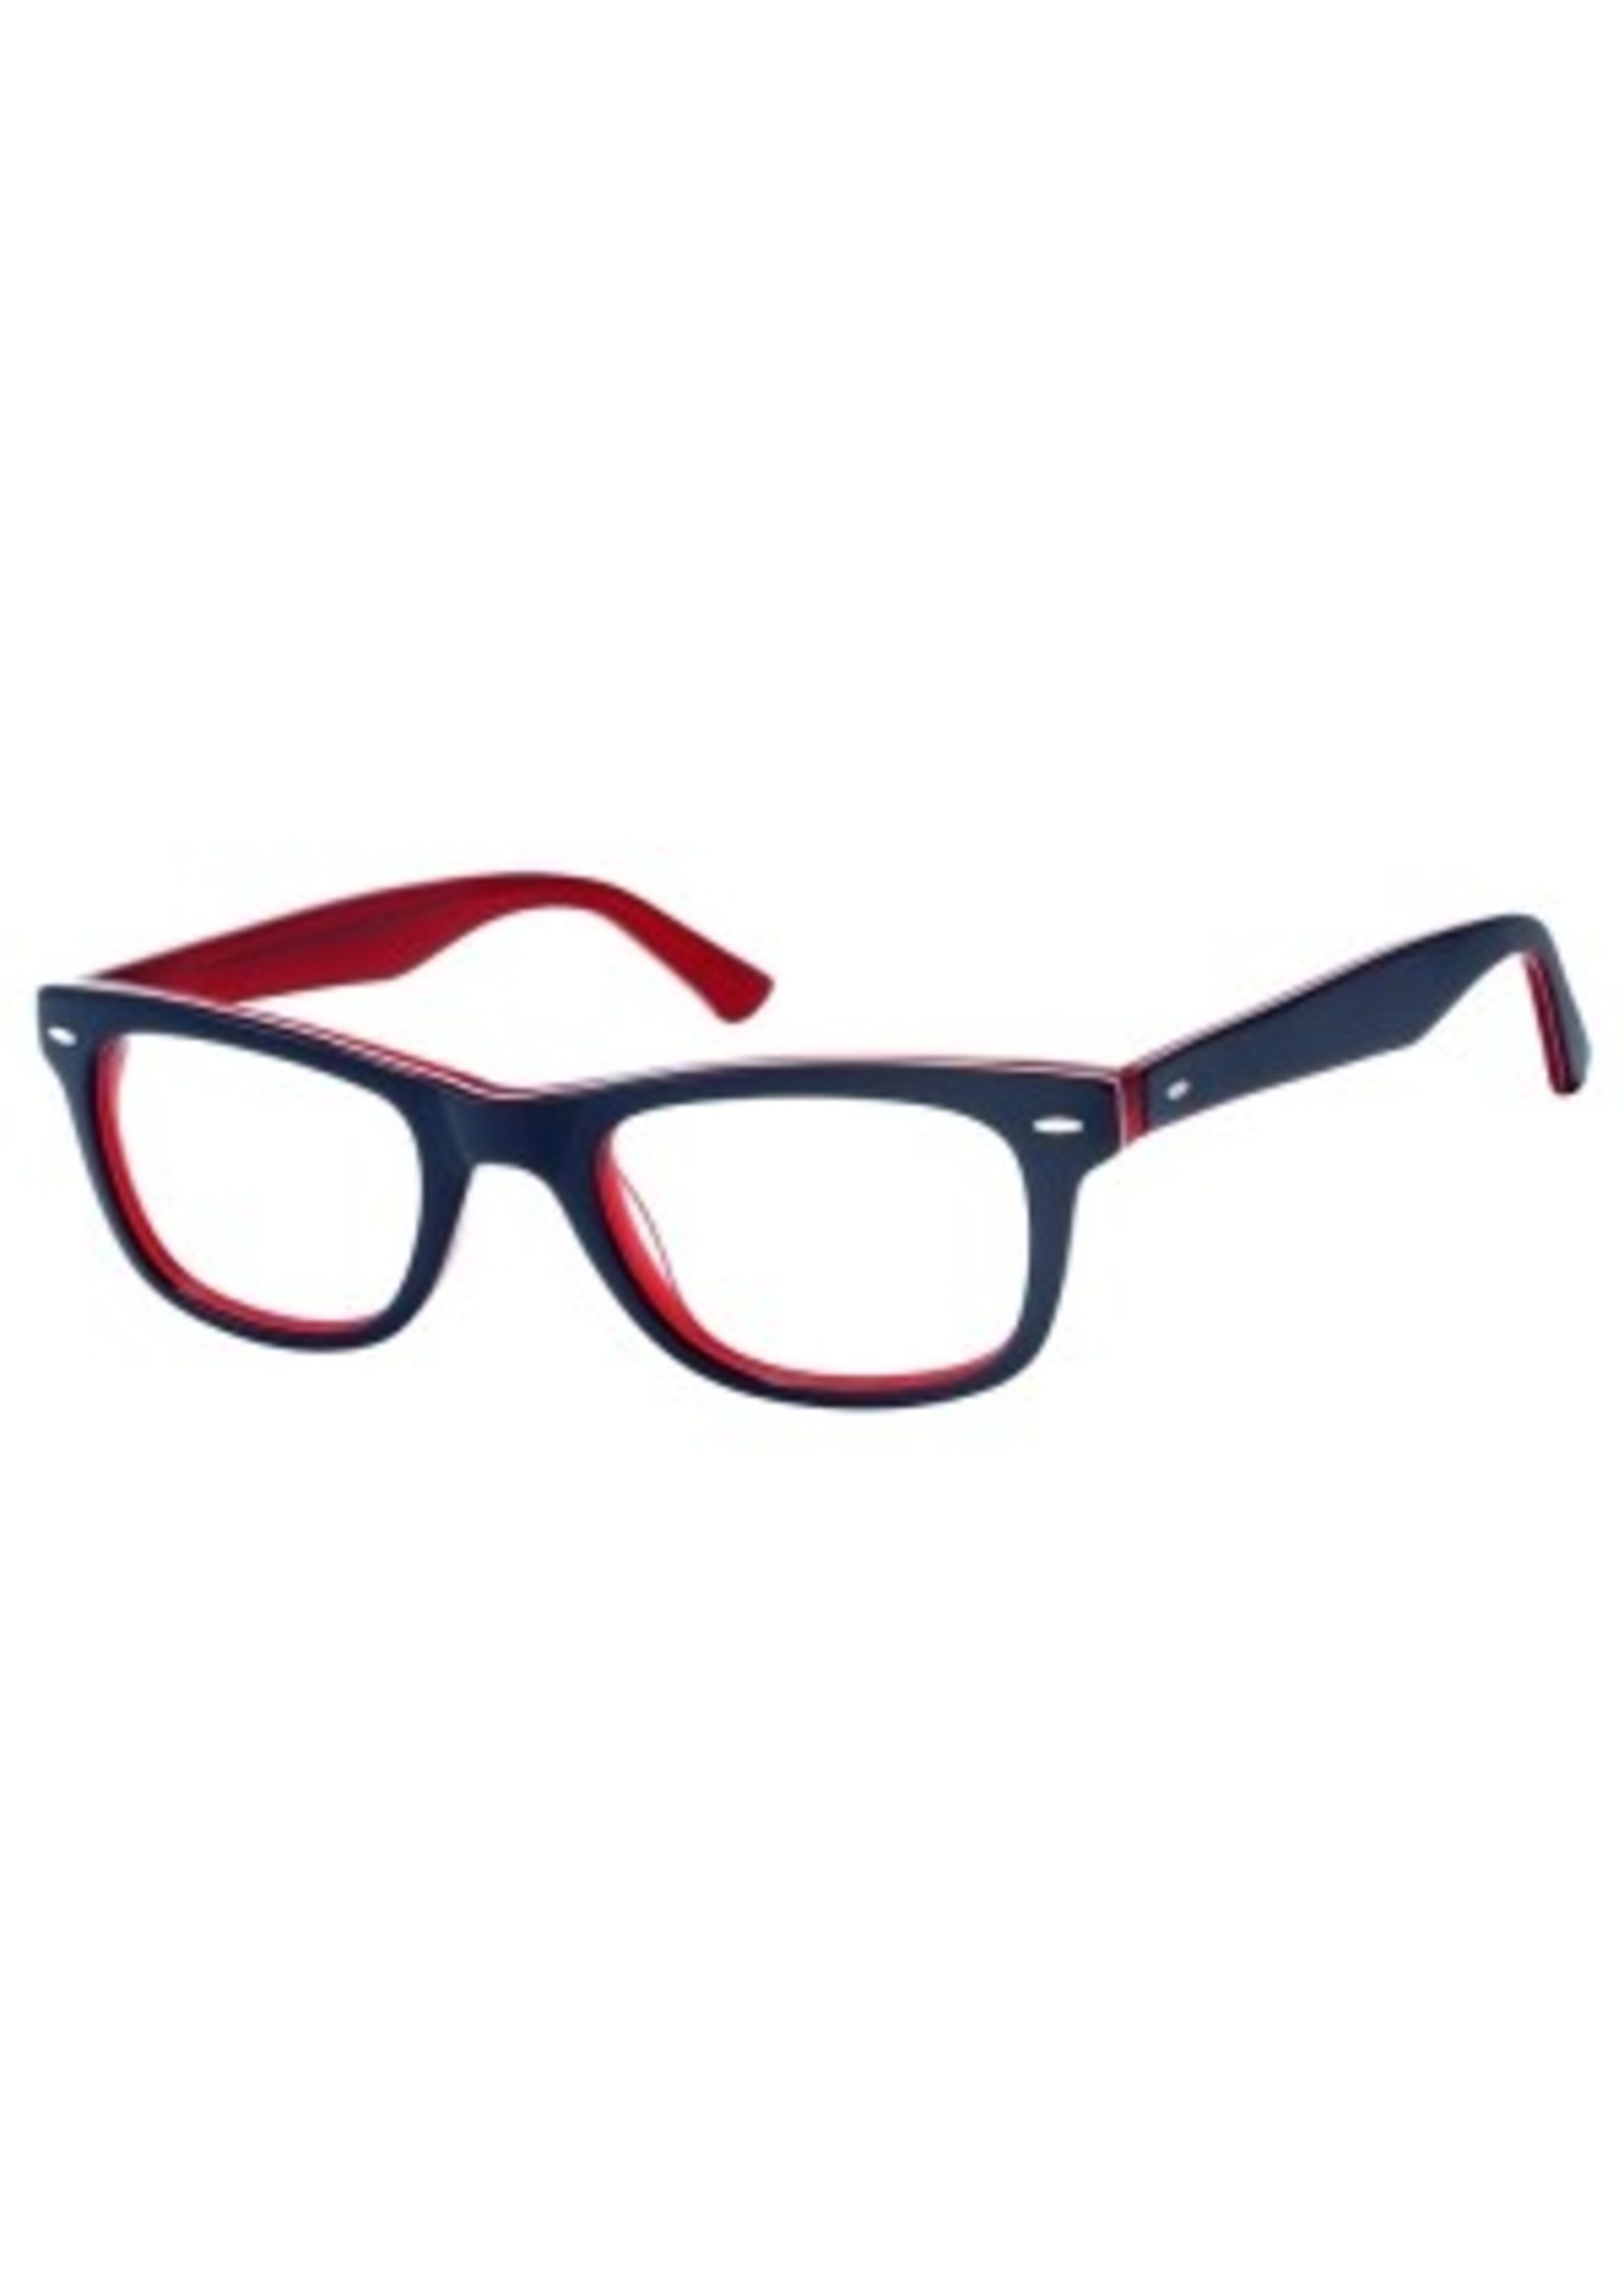 wayfarer leesbril in Navy blue/red